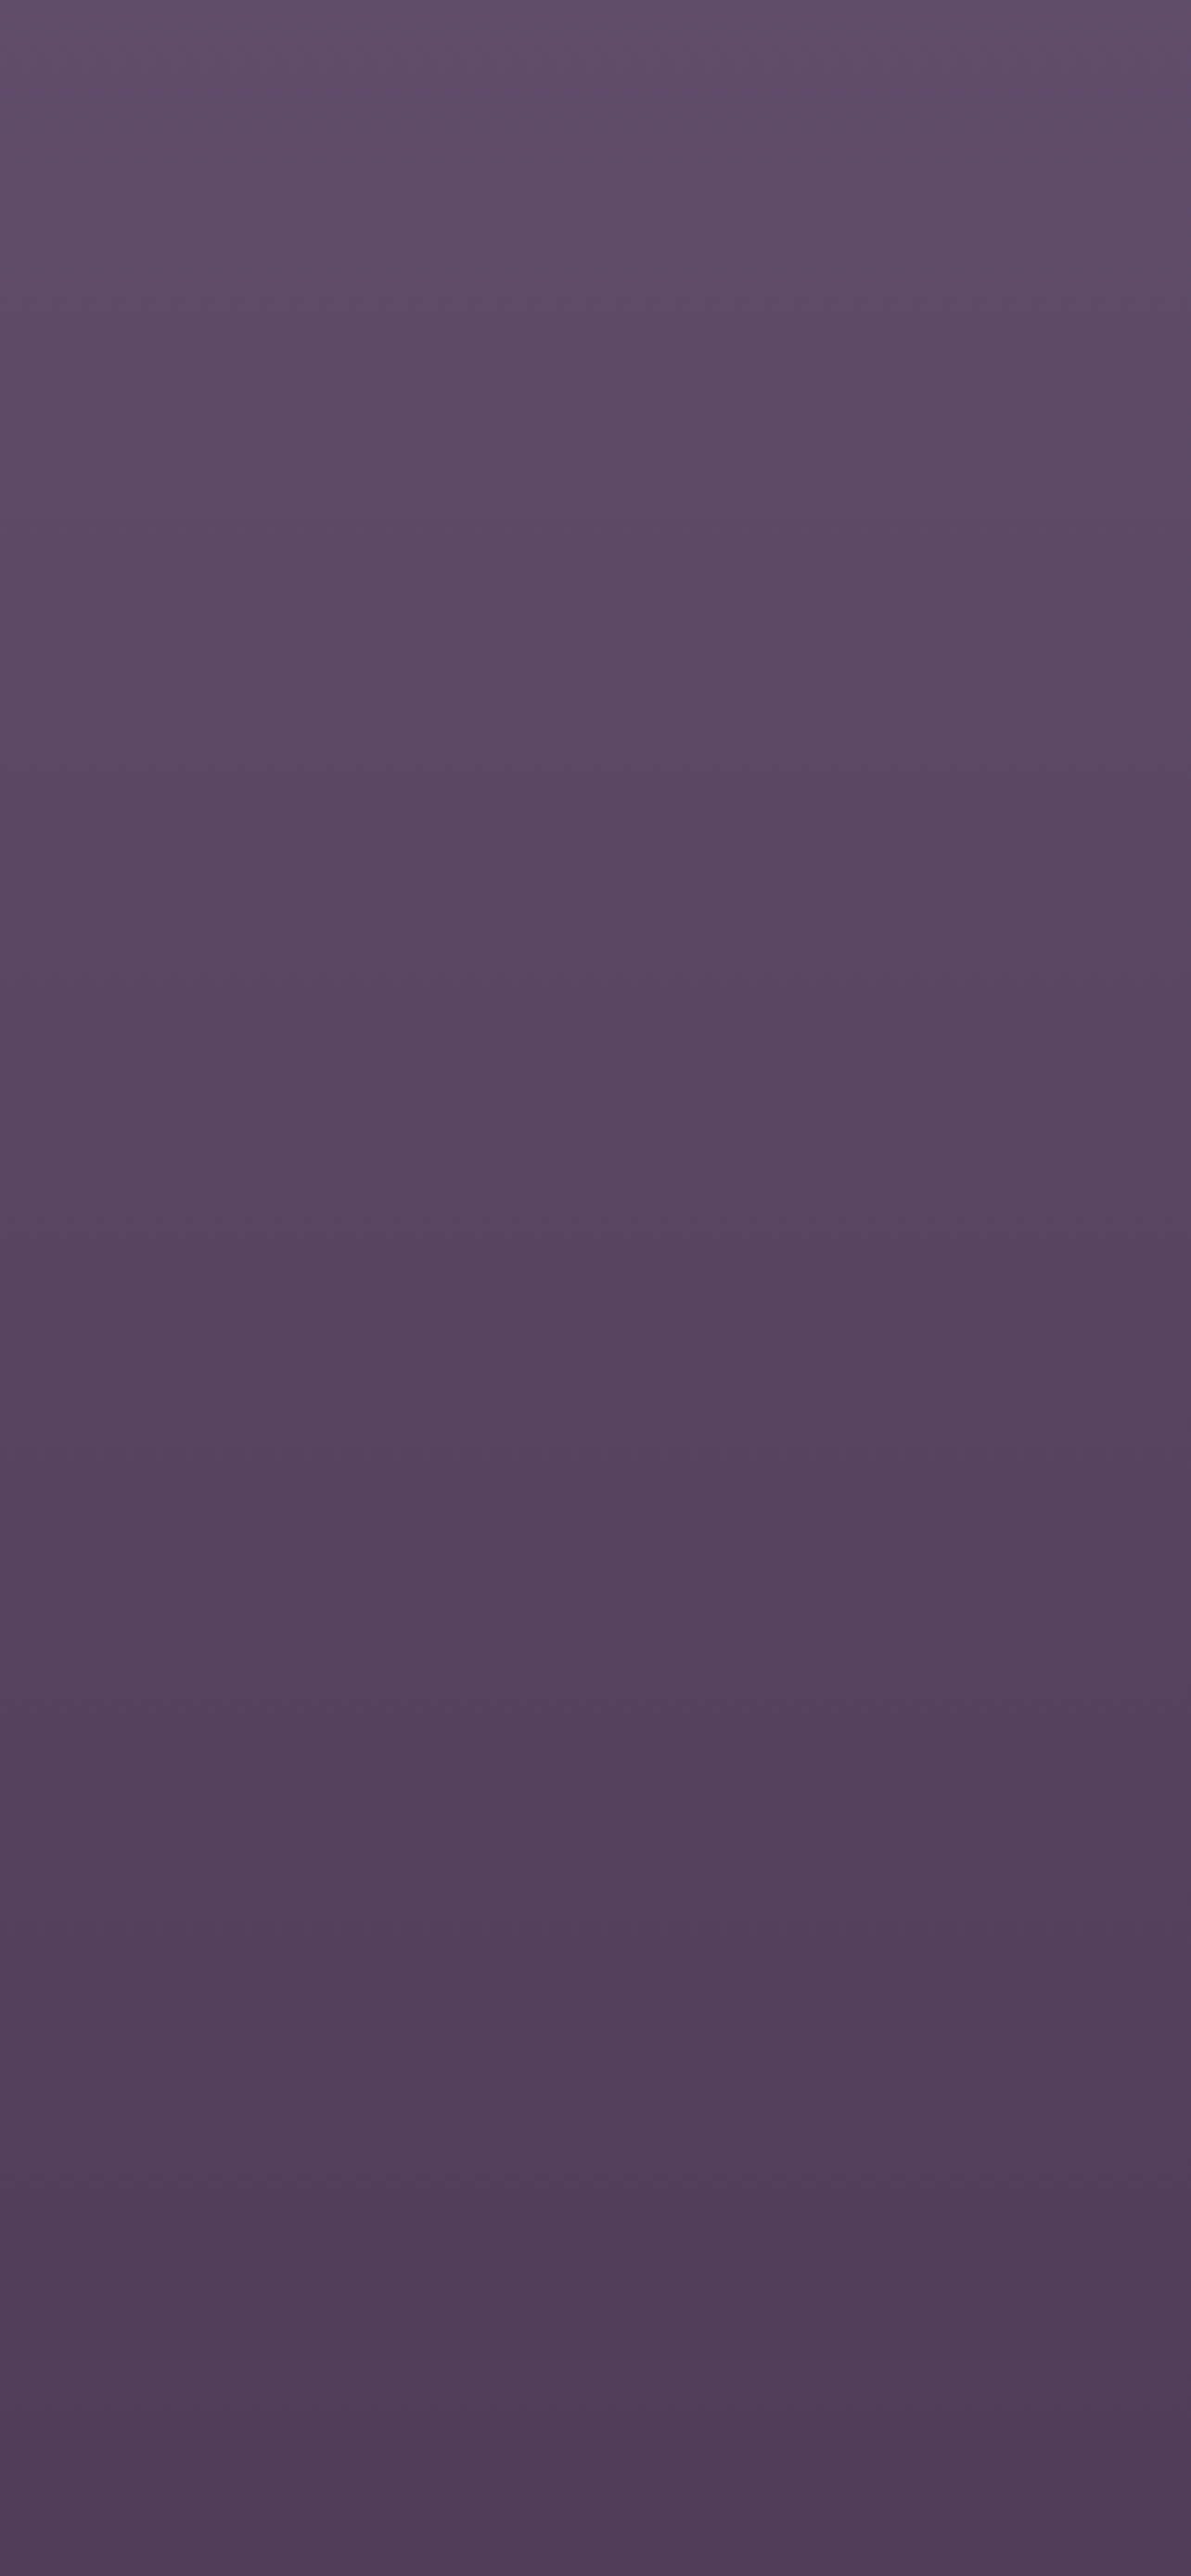 49 Plain Wallpaper for Desktop Purple  WallpaperSafari